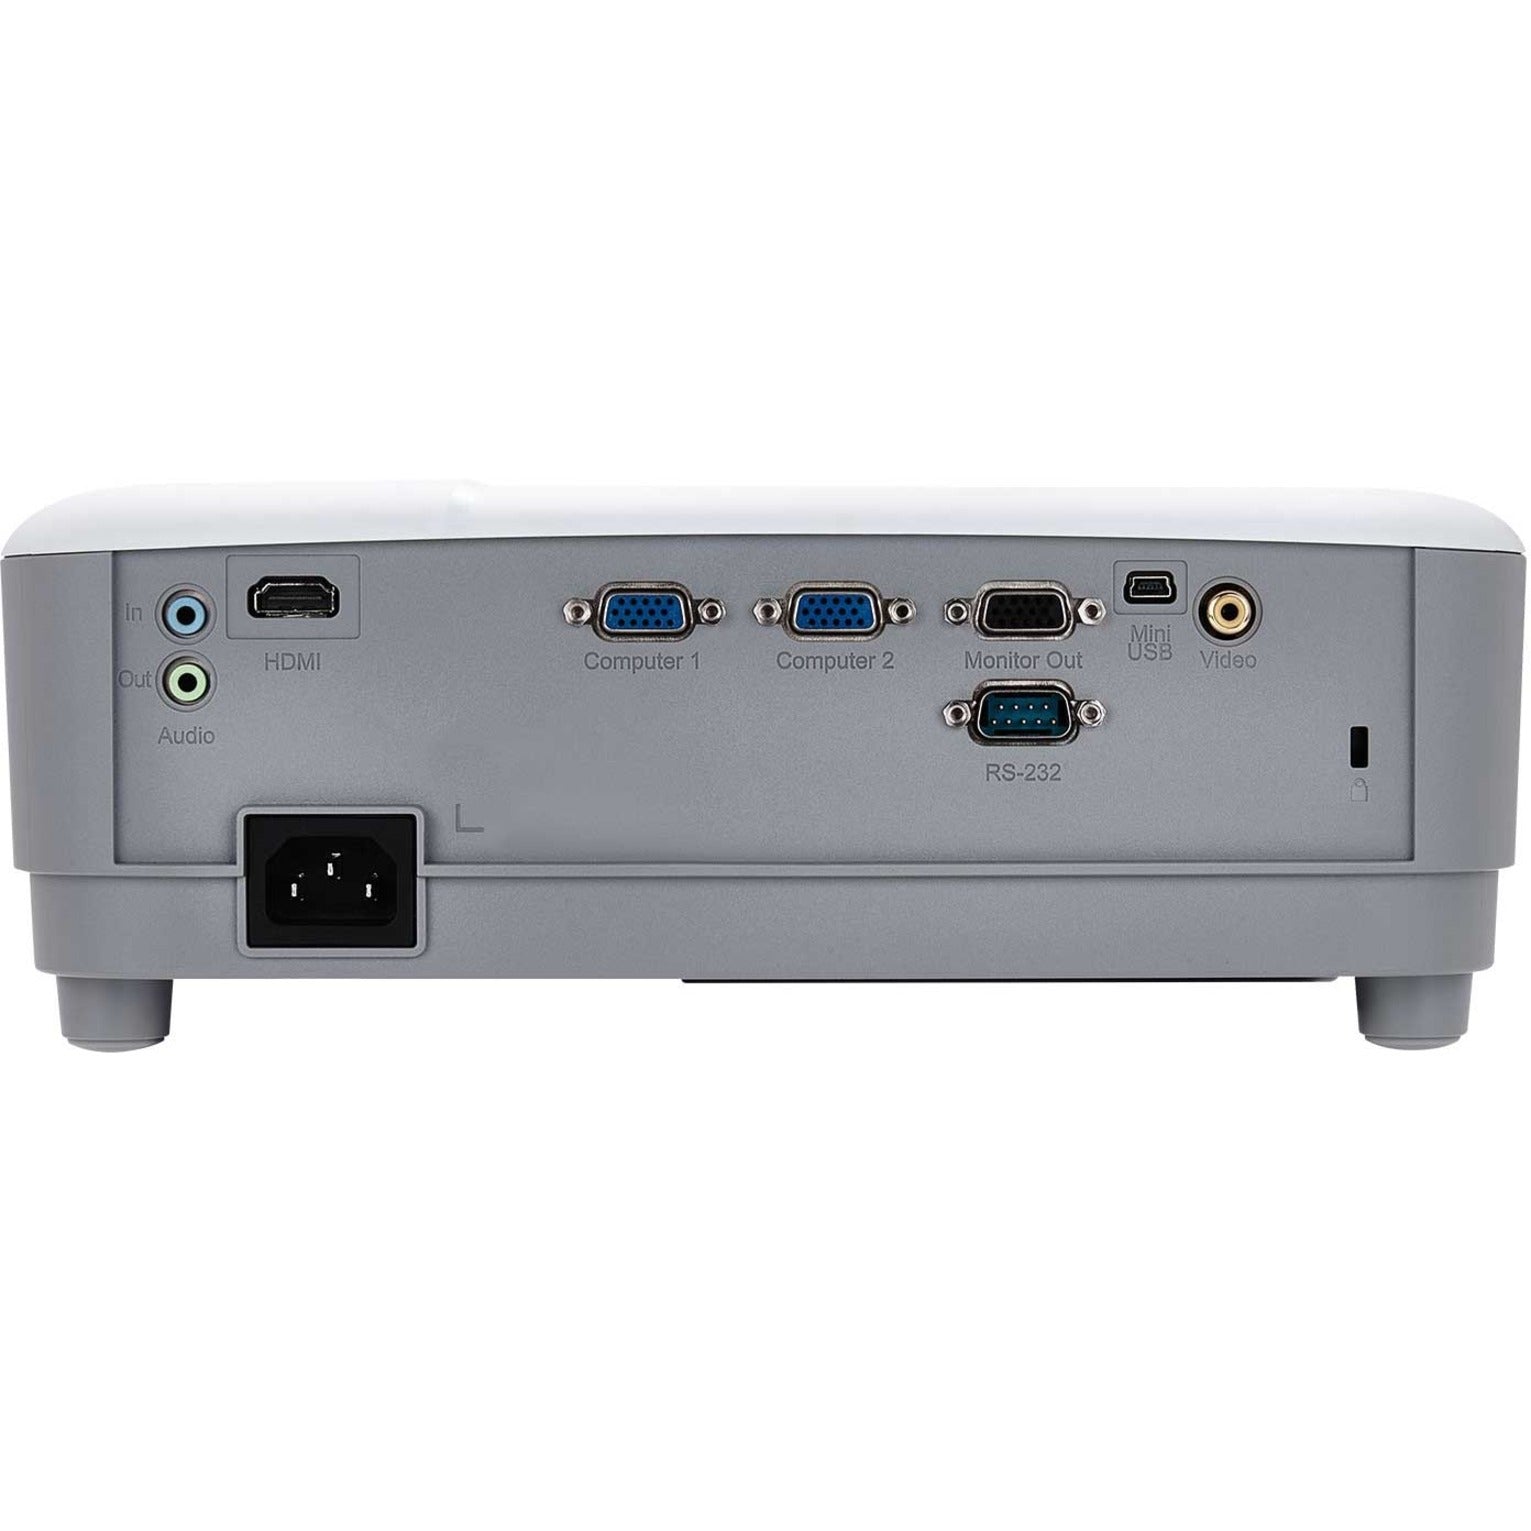 ViewSonic PA503W WXGA DLP Projector, 3600 Lumens, HDMI, VGA, USB, 3D Ready